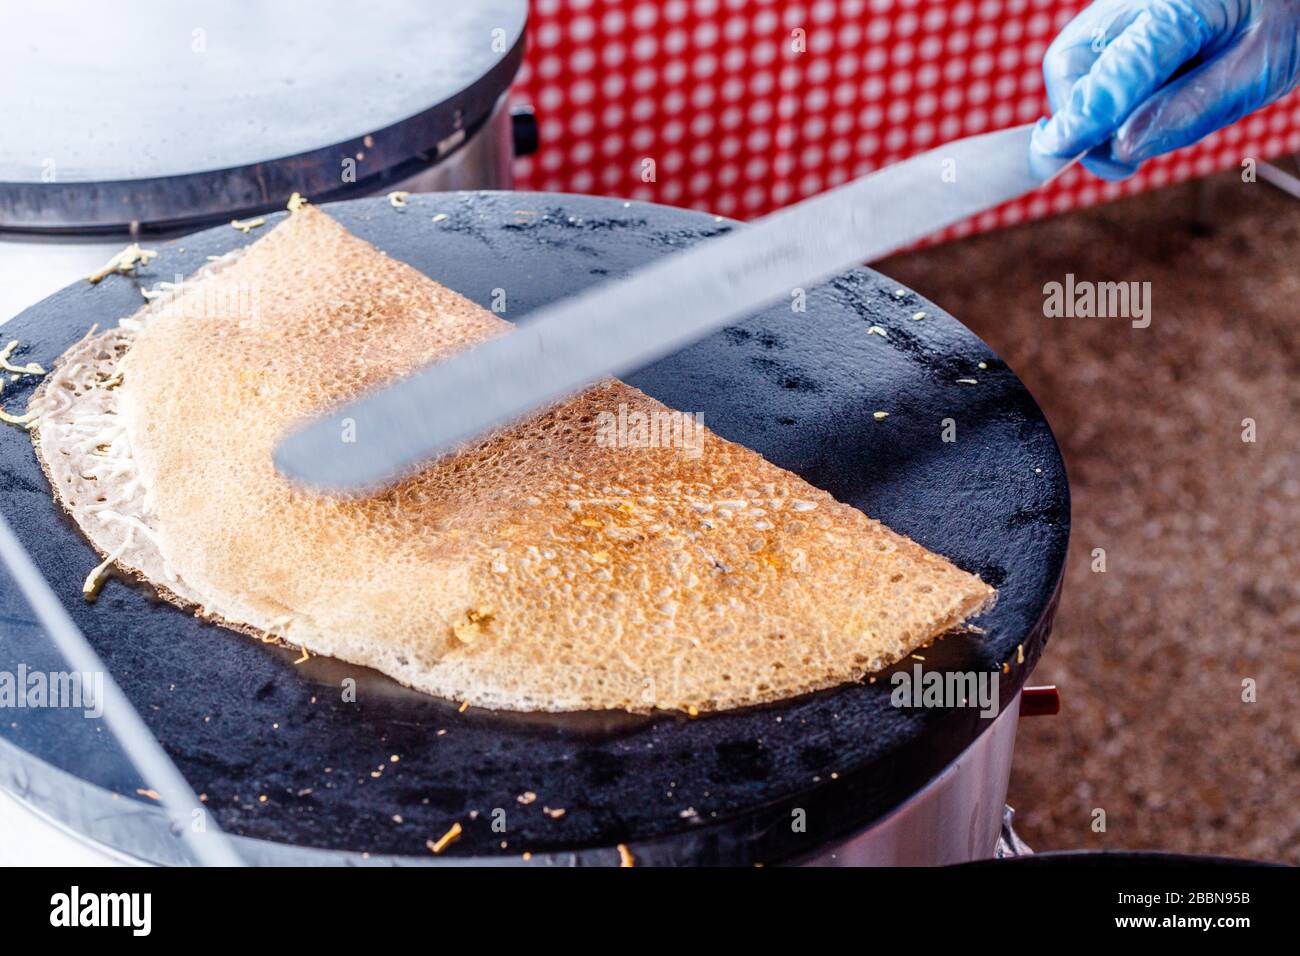 Fare crepes frittelle in un mercato alimentare. Una mano sta facendo crepes saporite all'aperto su una griglia di metallo. Foto Stock